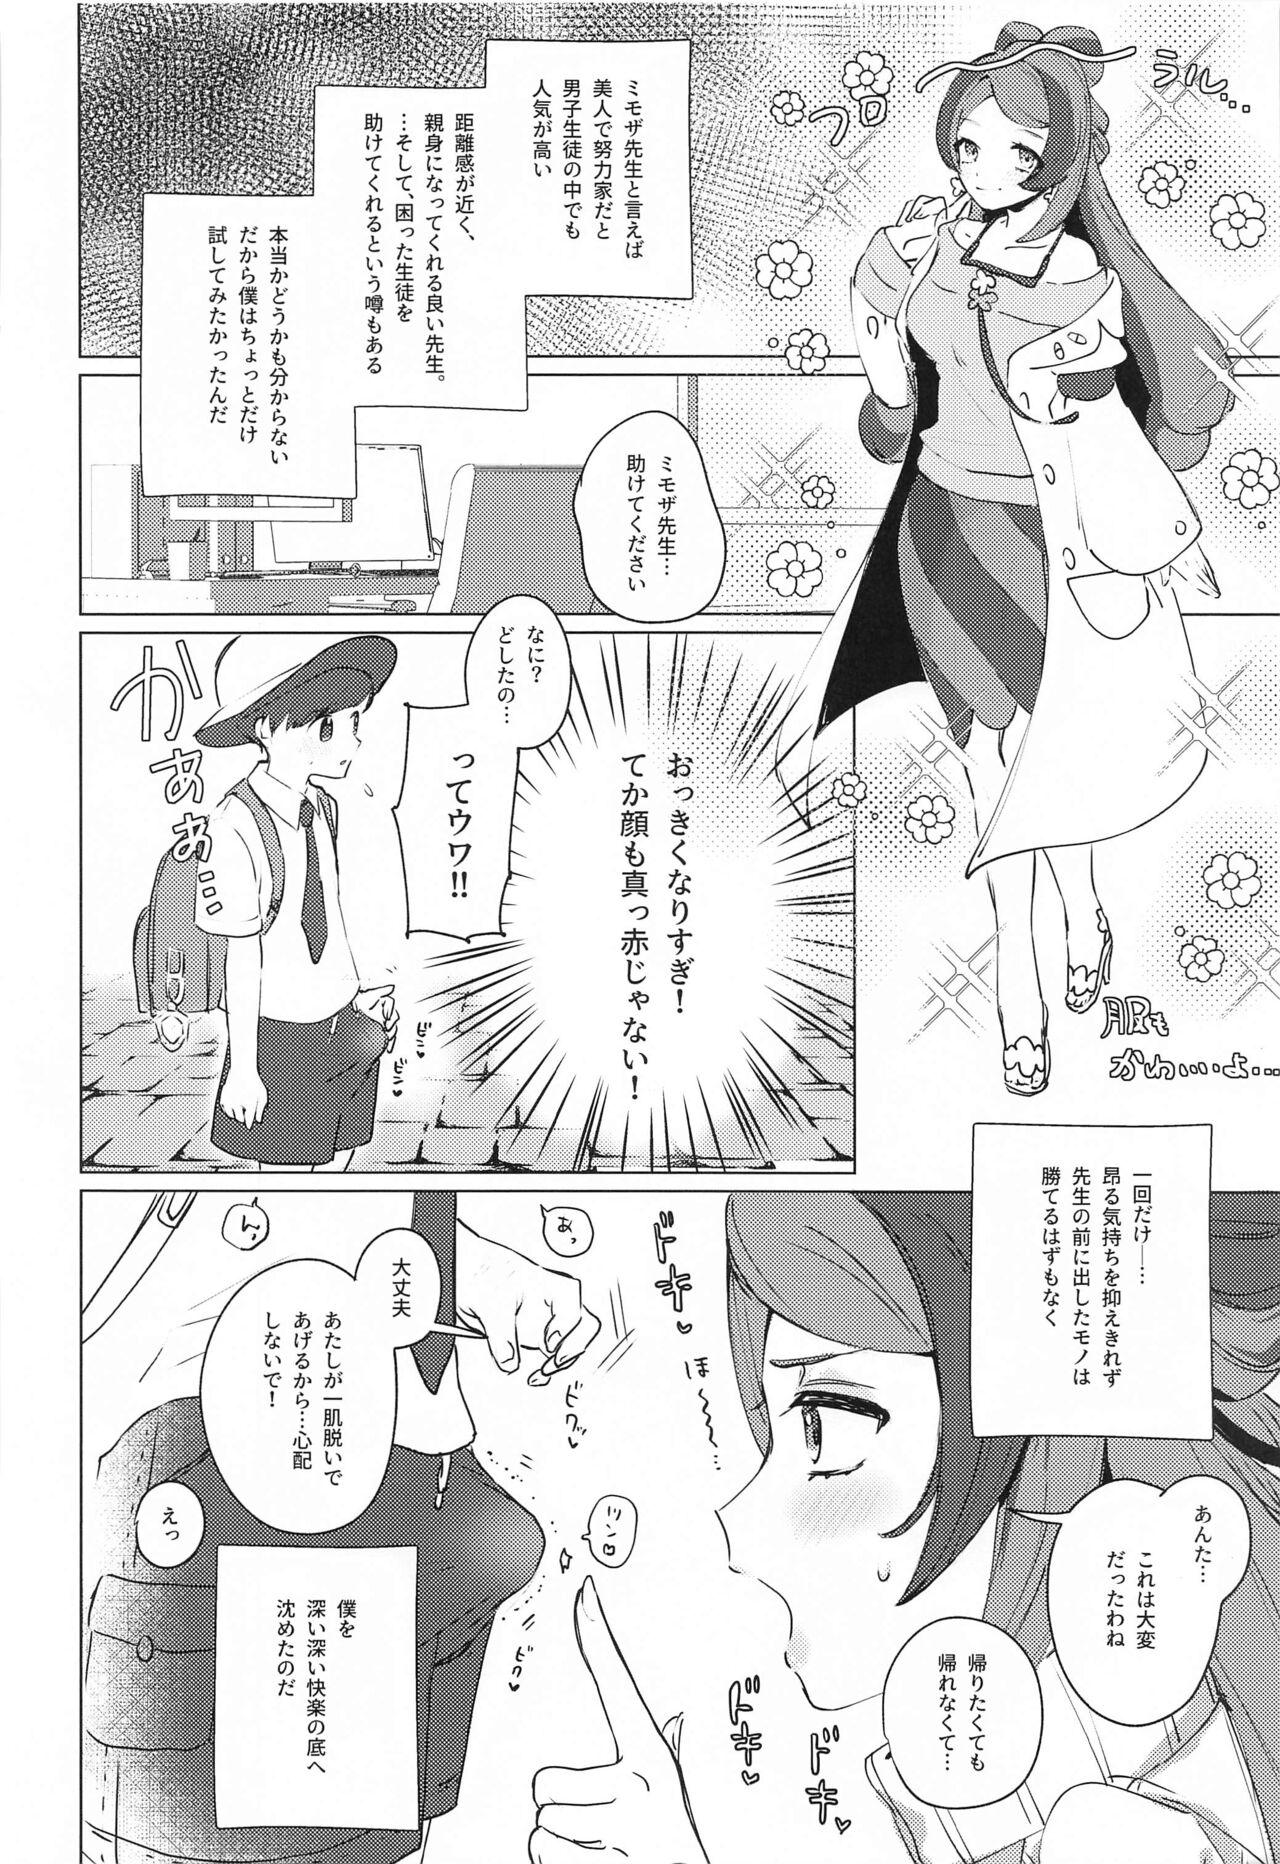 Peitos Hakui no Tenshi wa Akumateki!? - Pokemon | pocket monsters Pattaya - Page 3